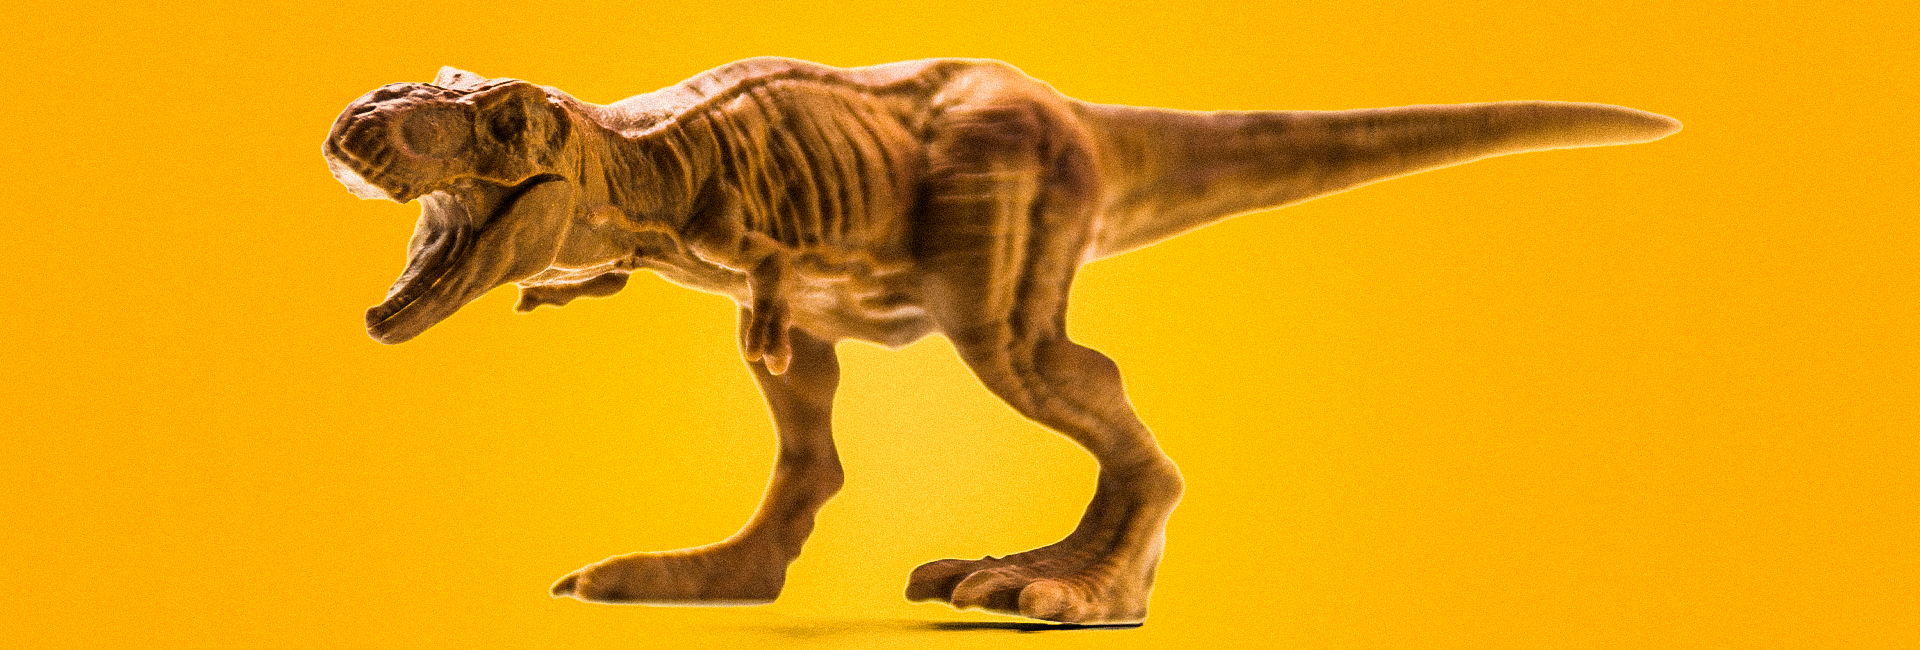 Long Tail - Dinossauro. Imagem com tons quentes amarelados de um dinossauro representando a cauda longa de Chris Anderson.